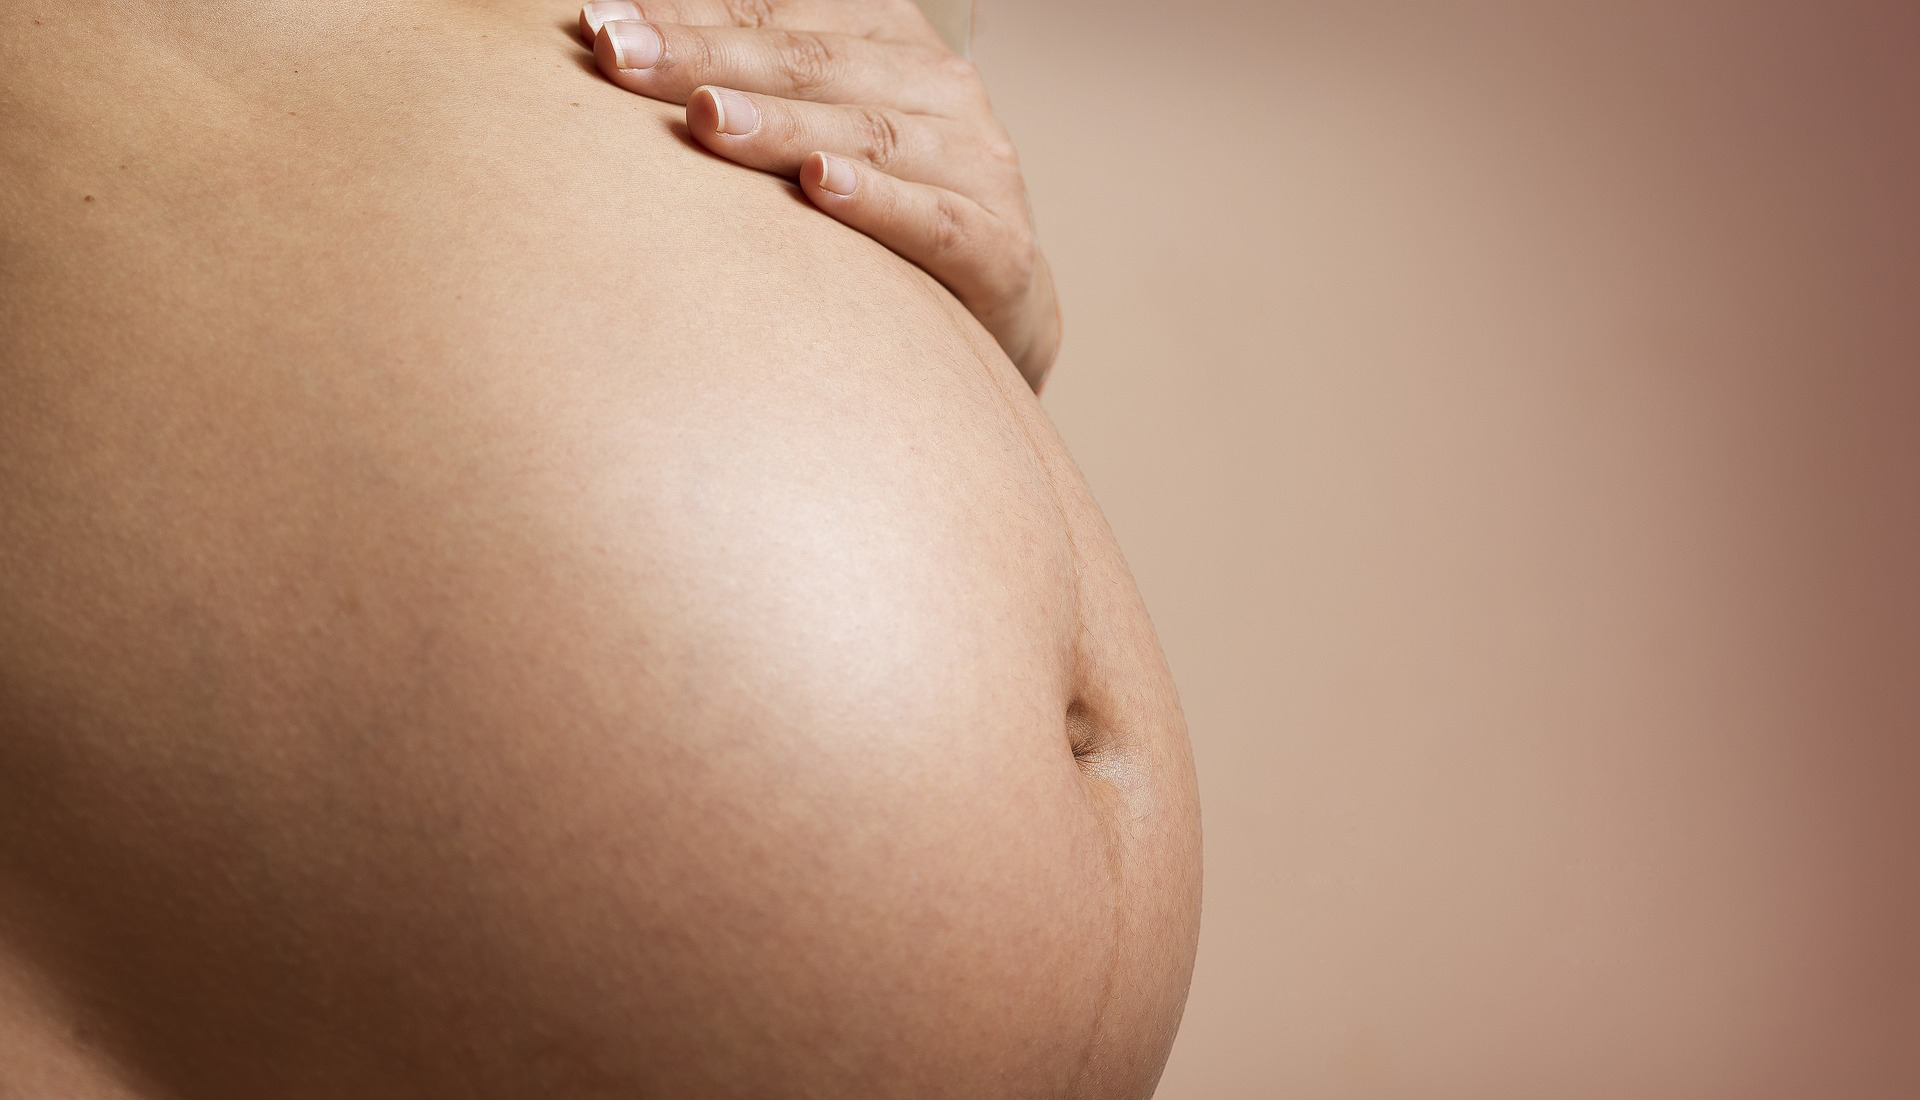 Peso da mãe antes da gestação traz mais riscos do que peso ganho durante a gravidez